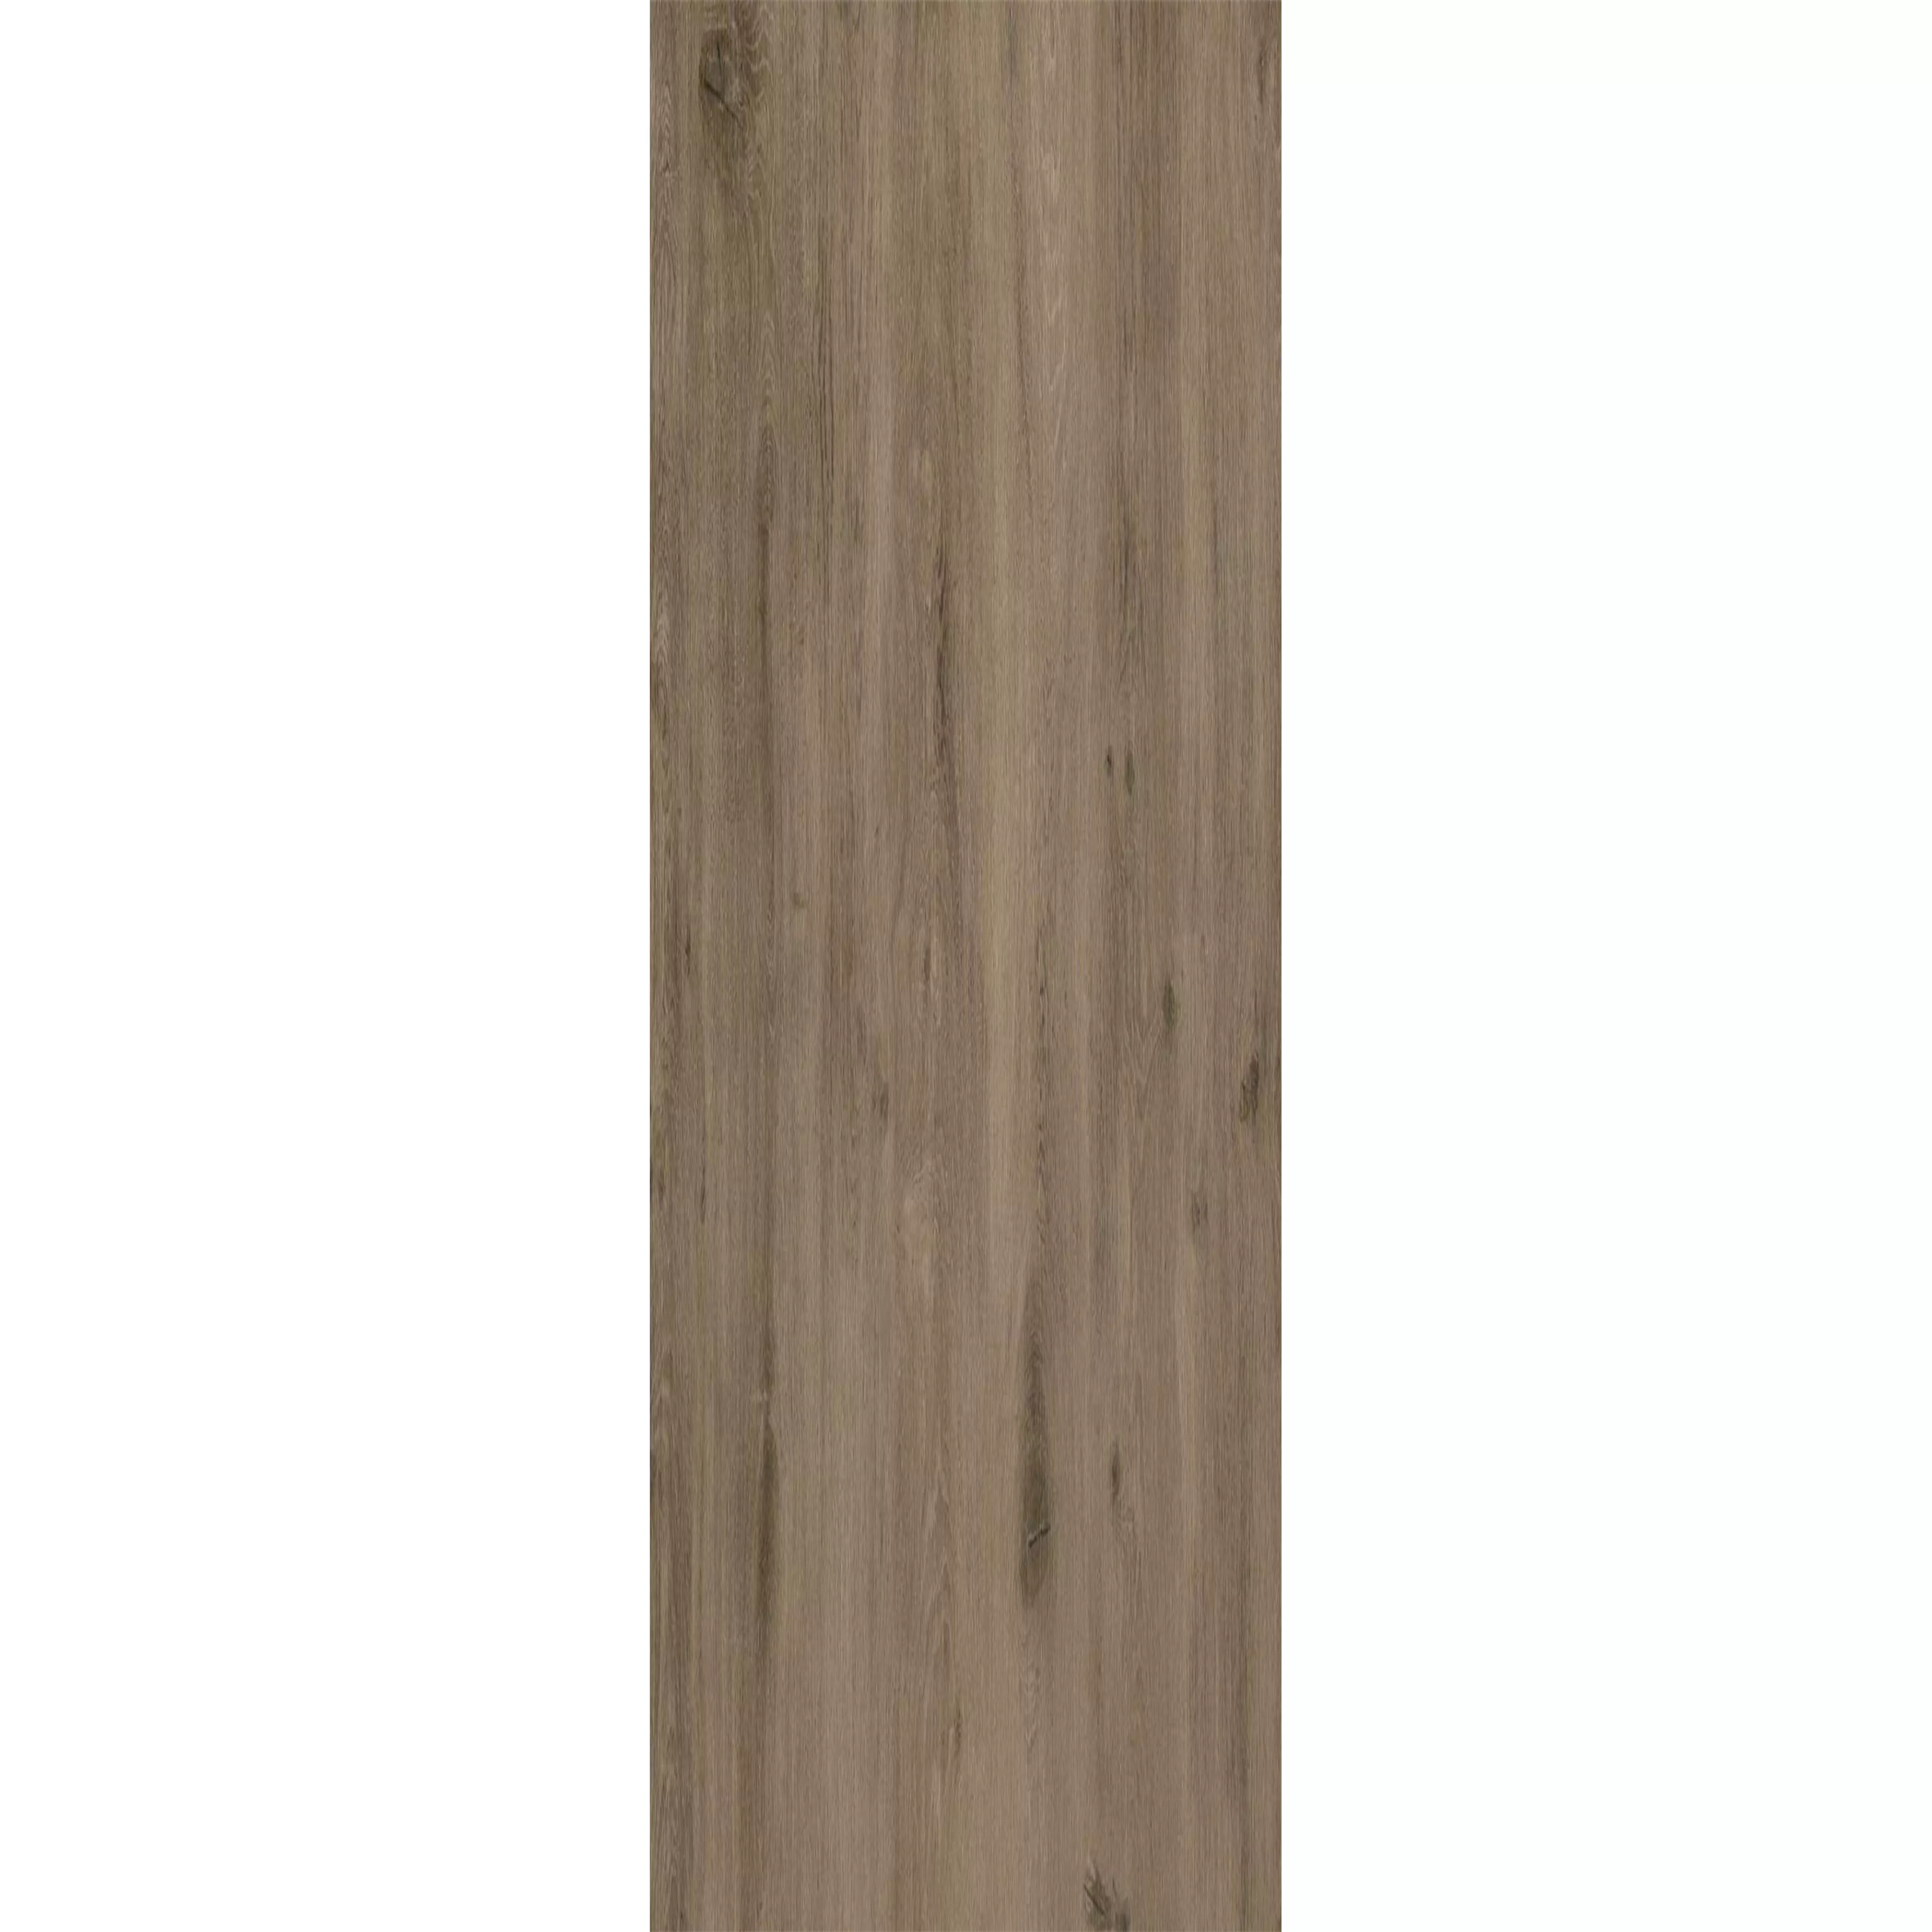 Δάπεδο Από Bινύλιο Σύστημα Κλικ Woodland Kαφέ Γκρί 17,2x121cm